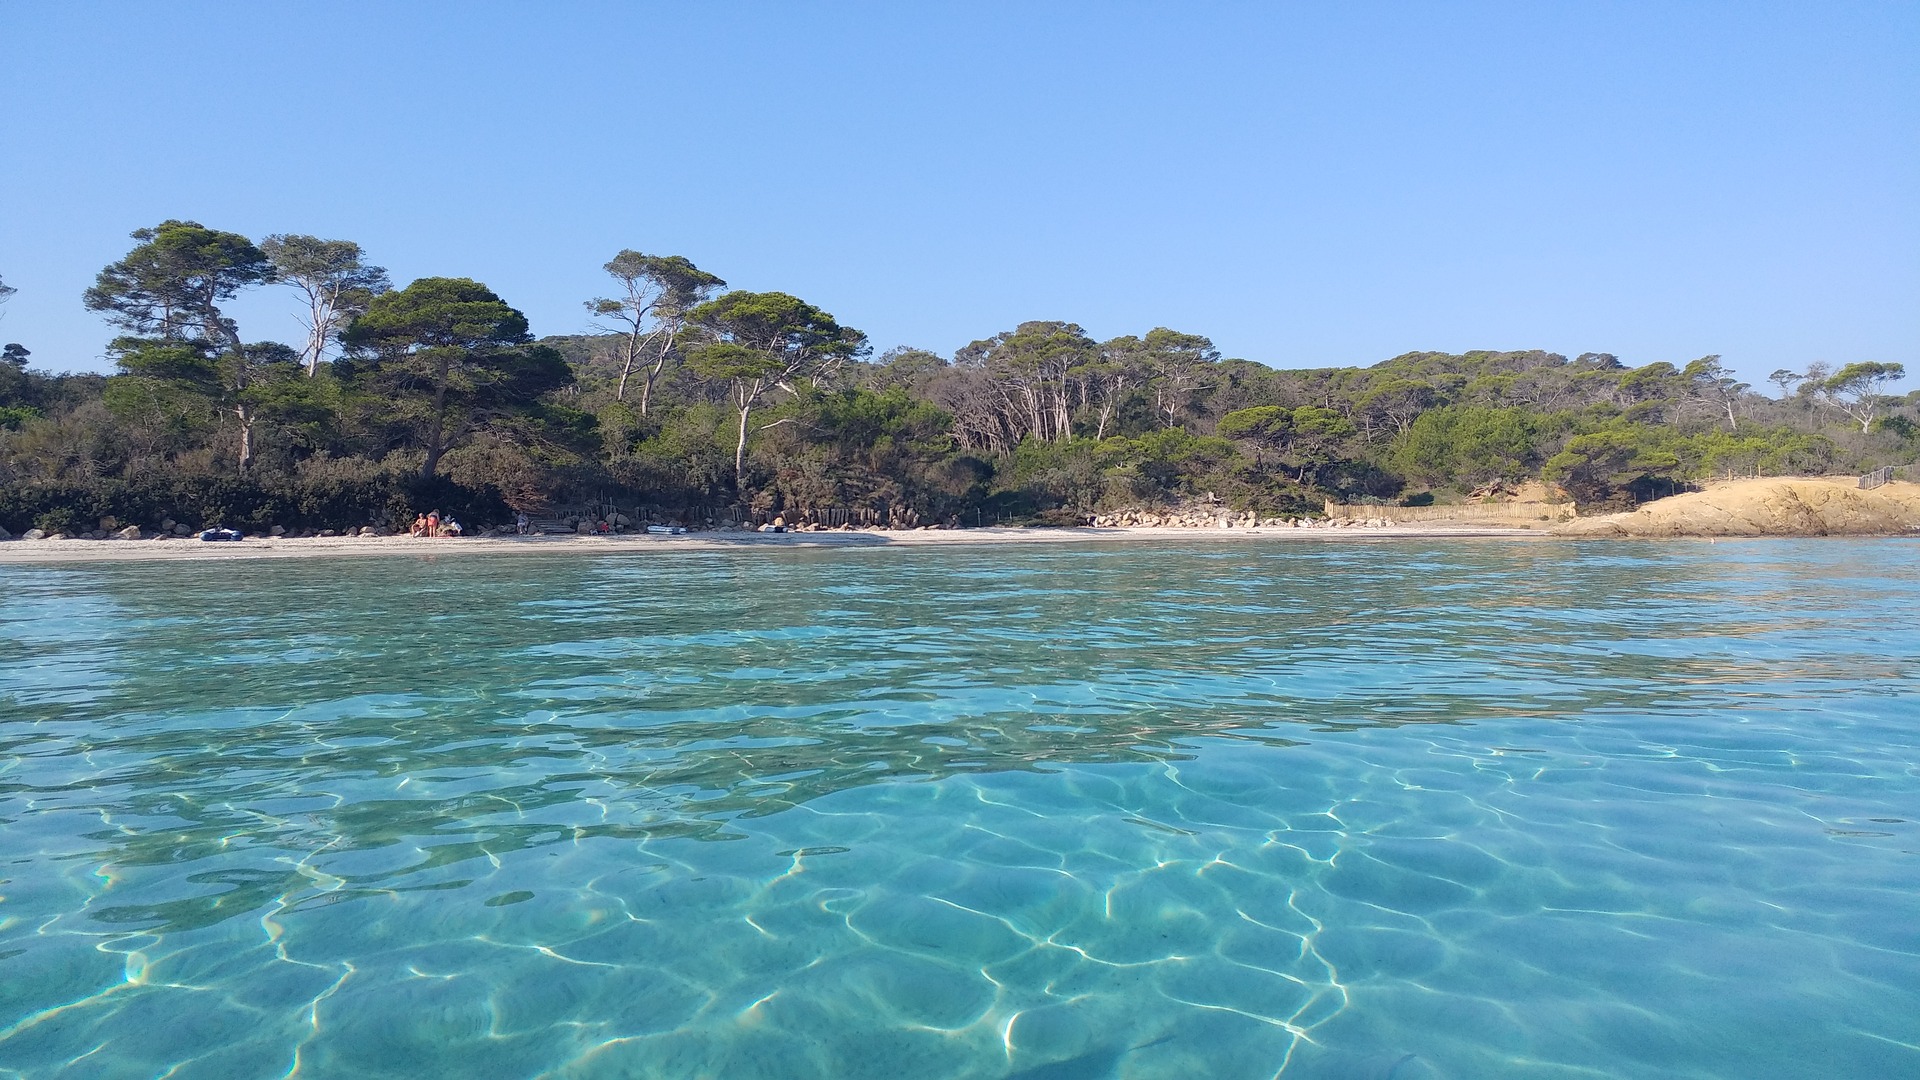 L’île de Porquerolle : un joyau de la Méditerranée  Si vous cherchez un camping avec piscine, le Site de Gorge Vent vous conviendra 